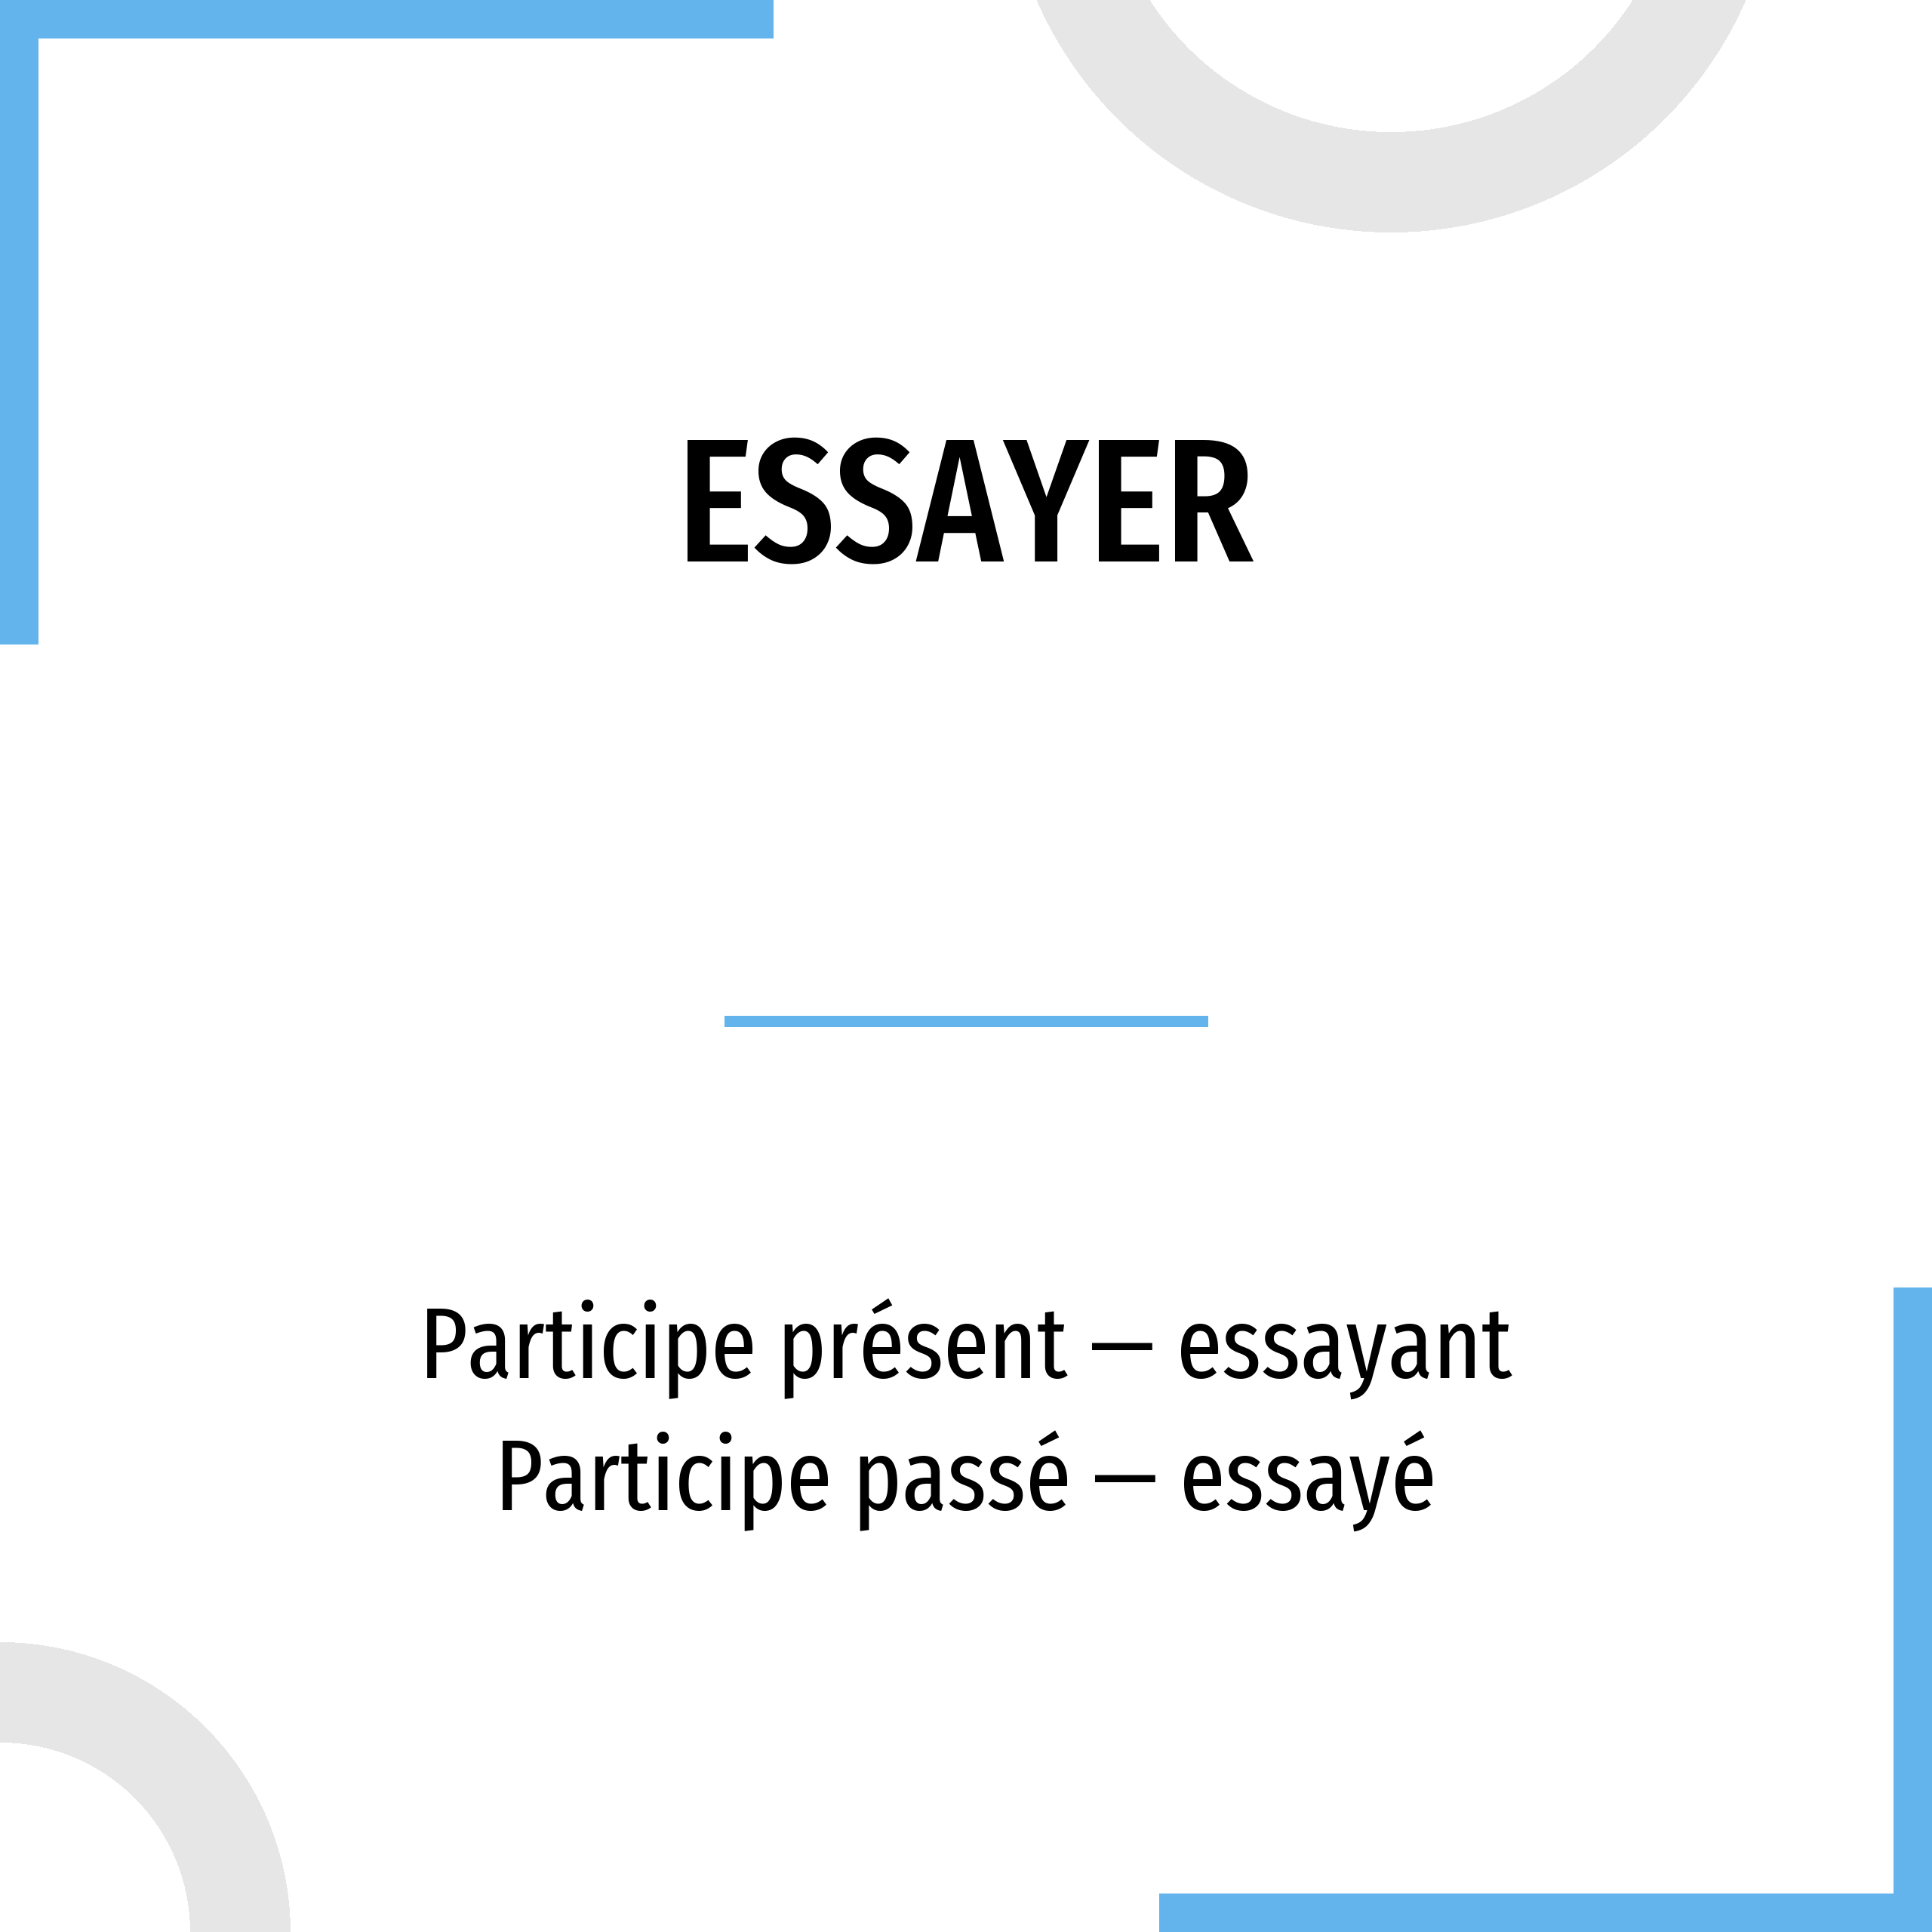 conjugation of essayer french